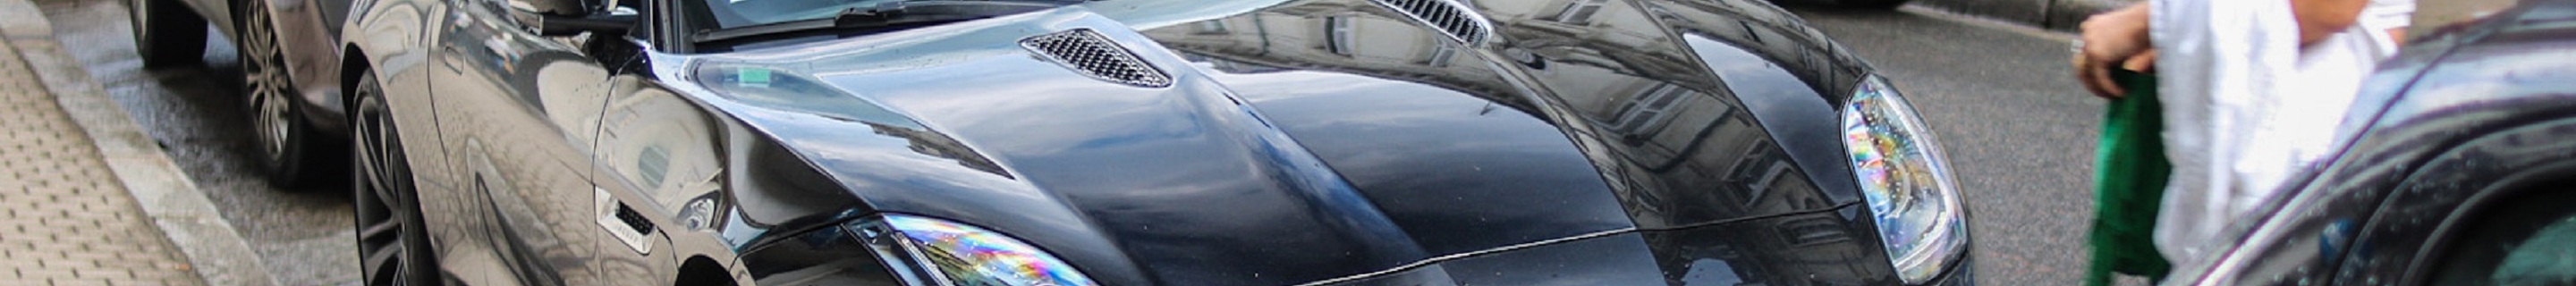 Jaguar F-TYPE S Coupé British Design Edition